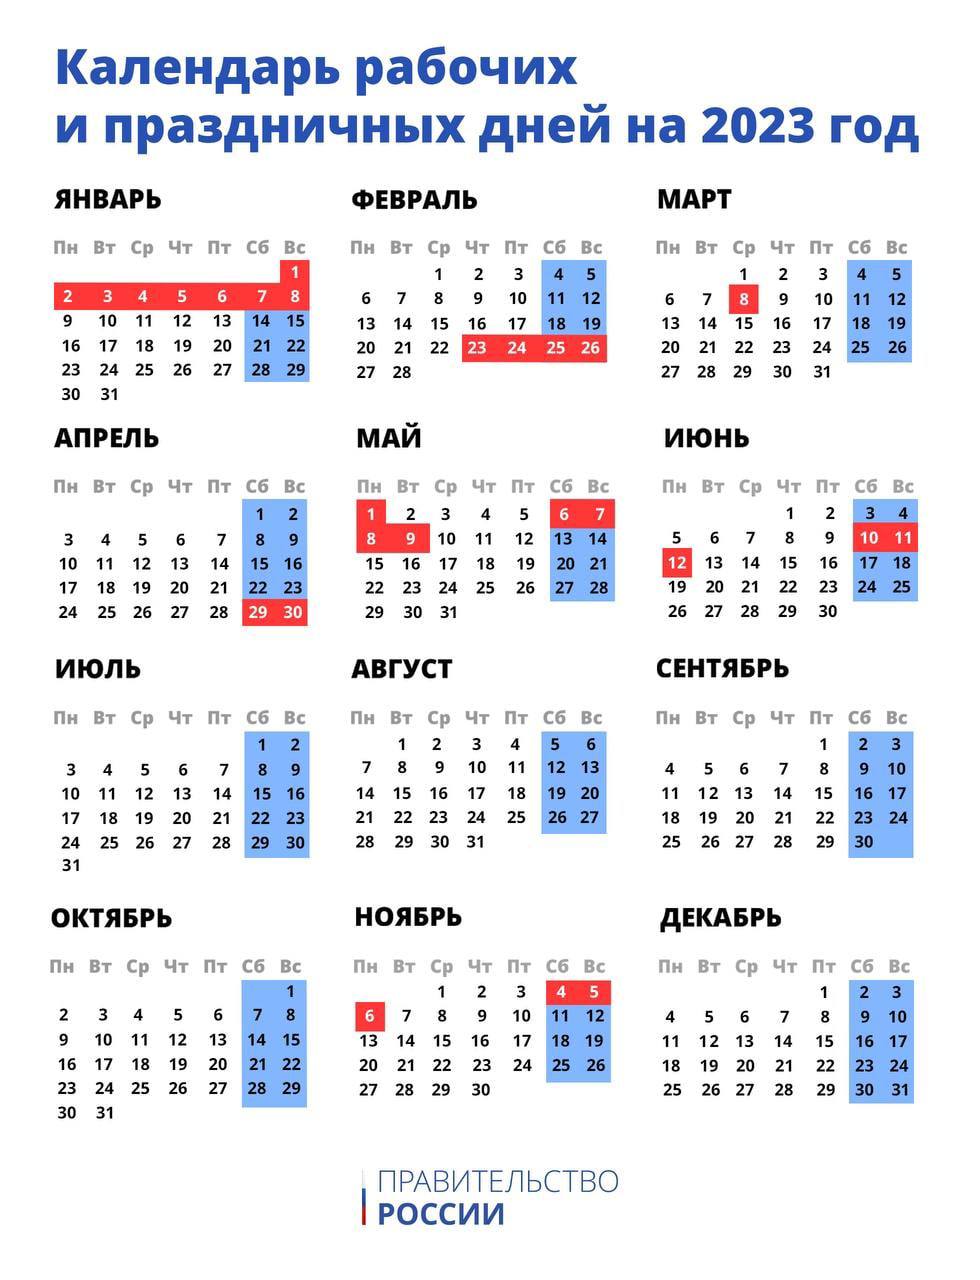 Всё меньше выходных: появился календарь праздников на 2023 год